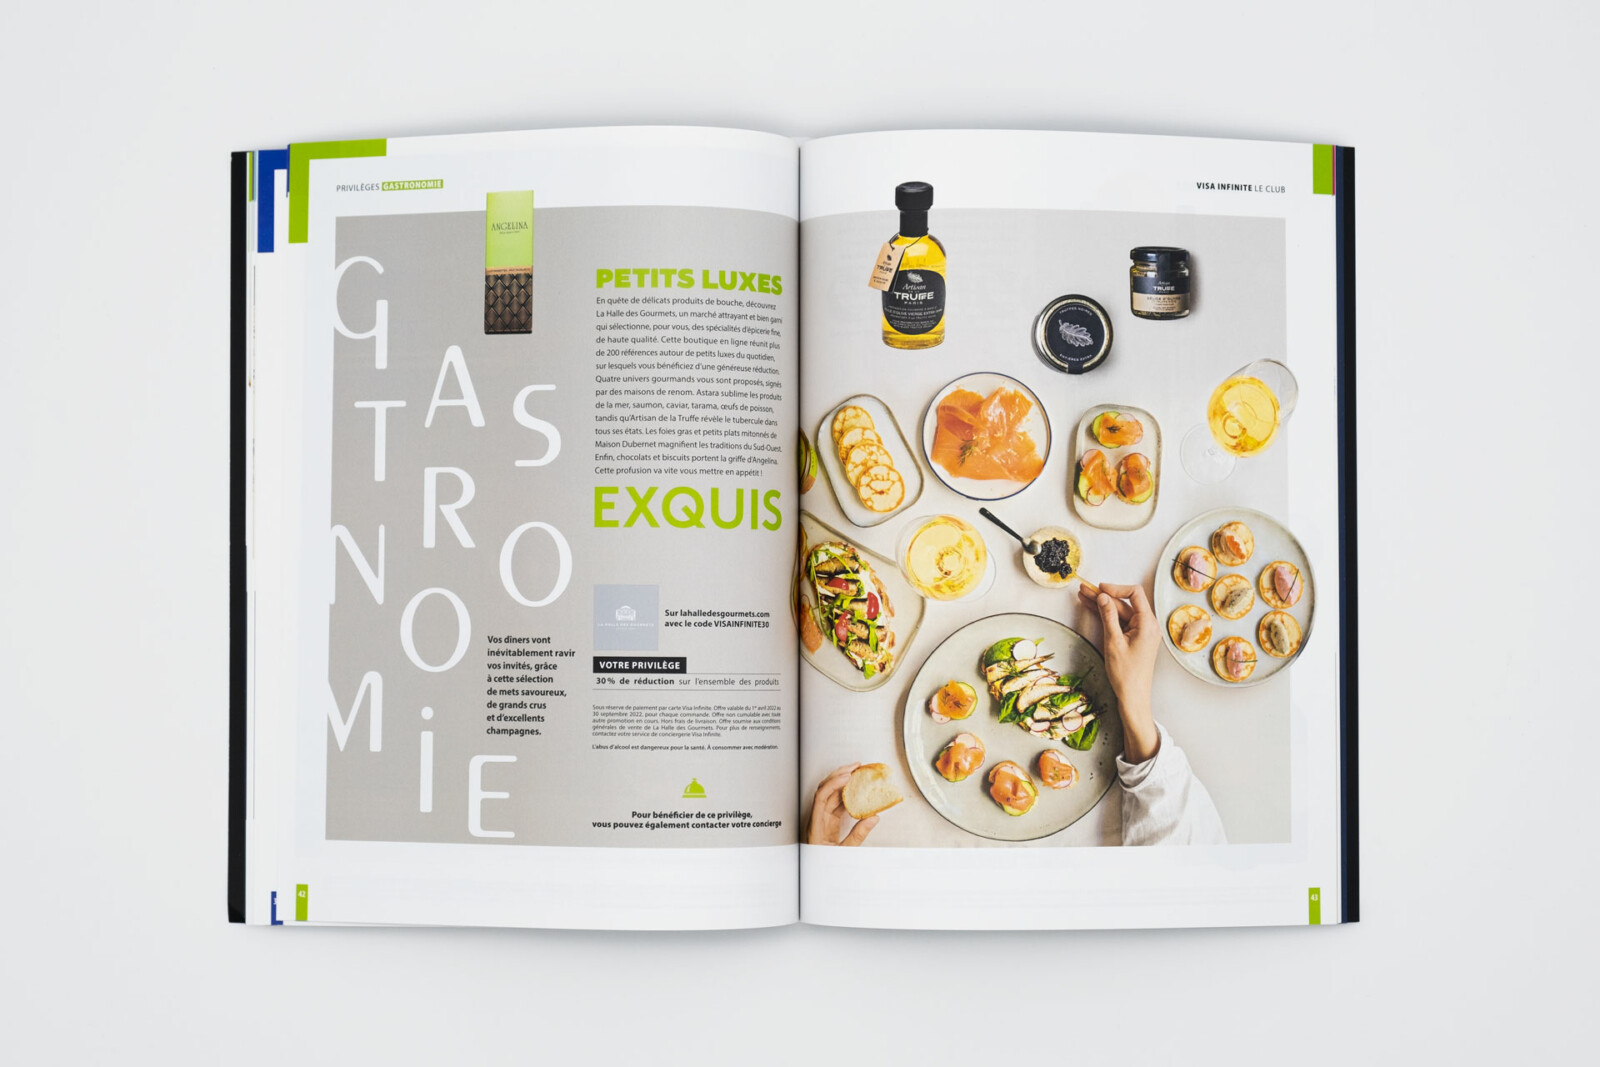 Double page d'ouverture de rubrique dédié à la gastronomie, pour cette parution "La Halle des Gourmets" est à l'honneur.